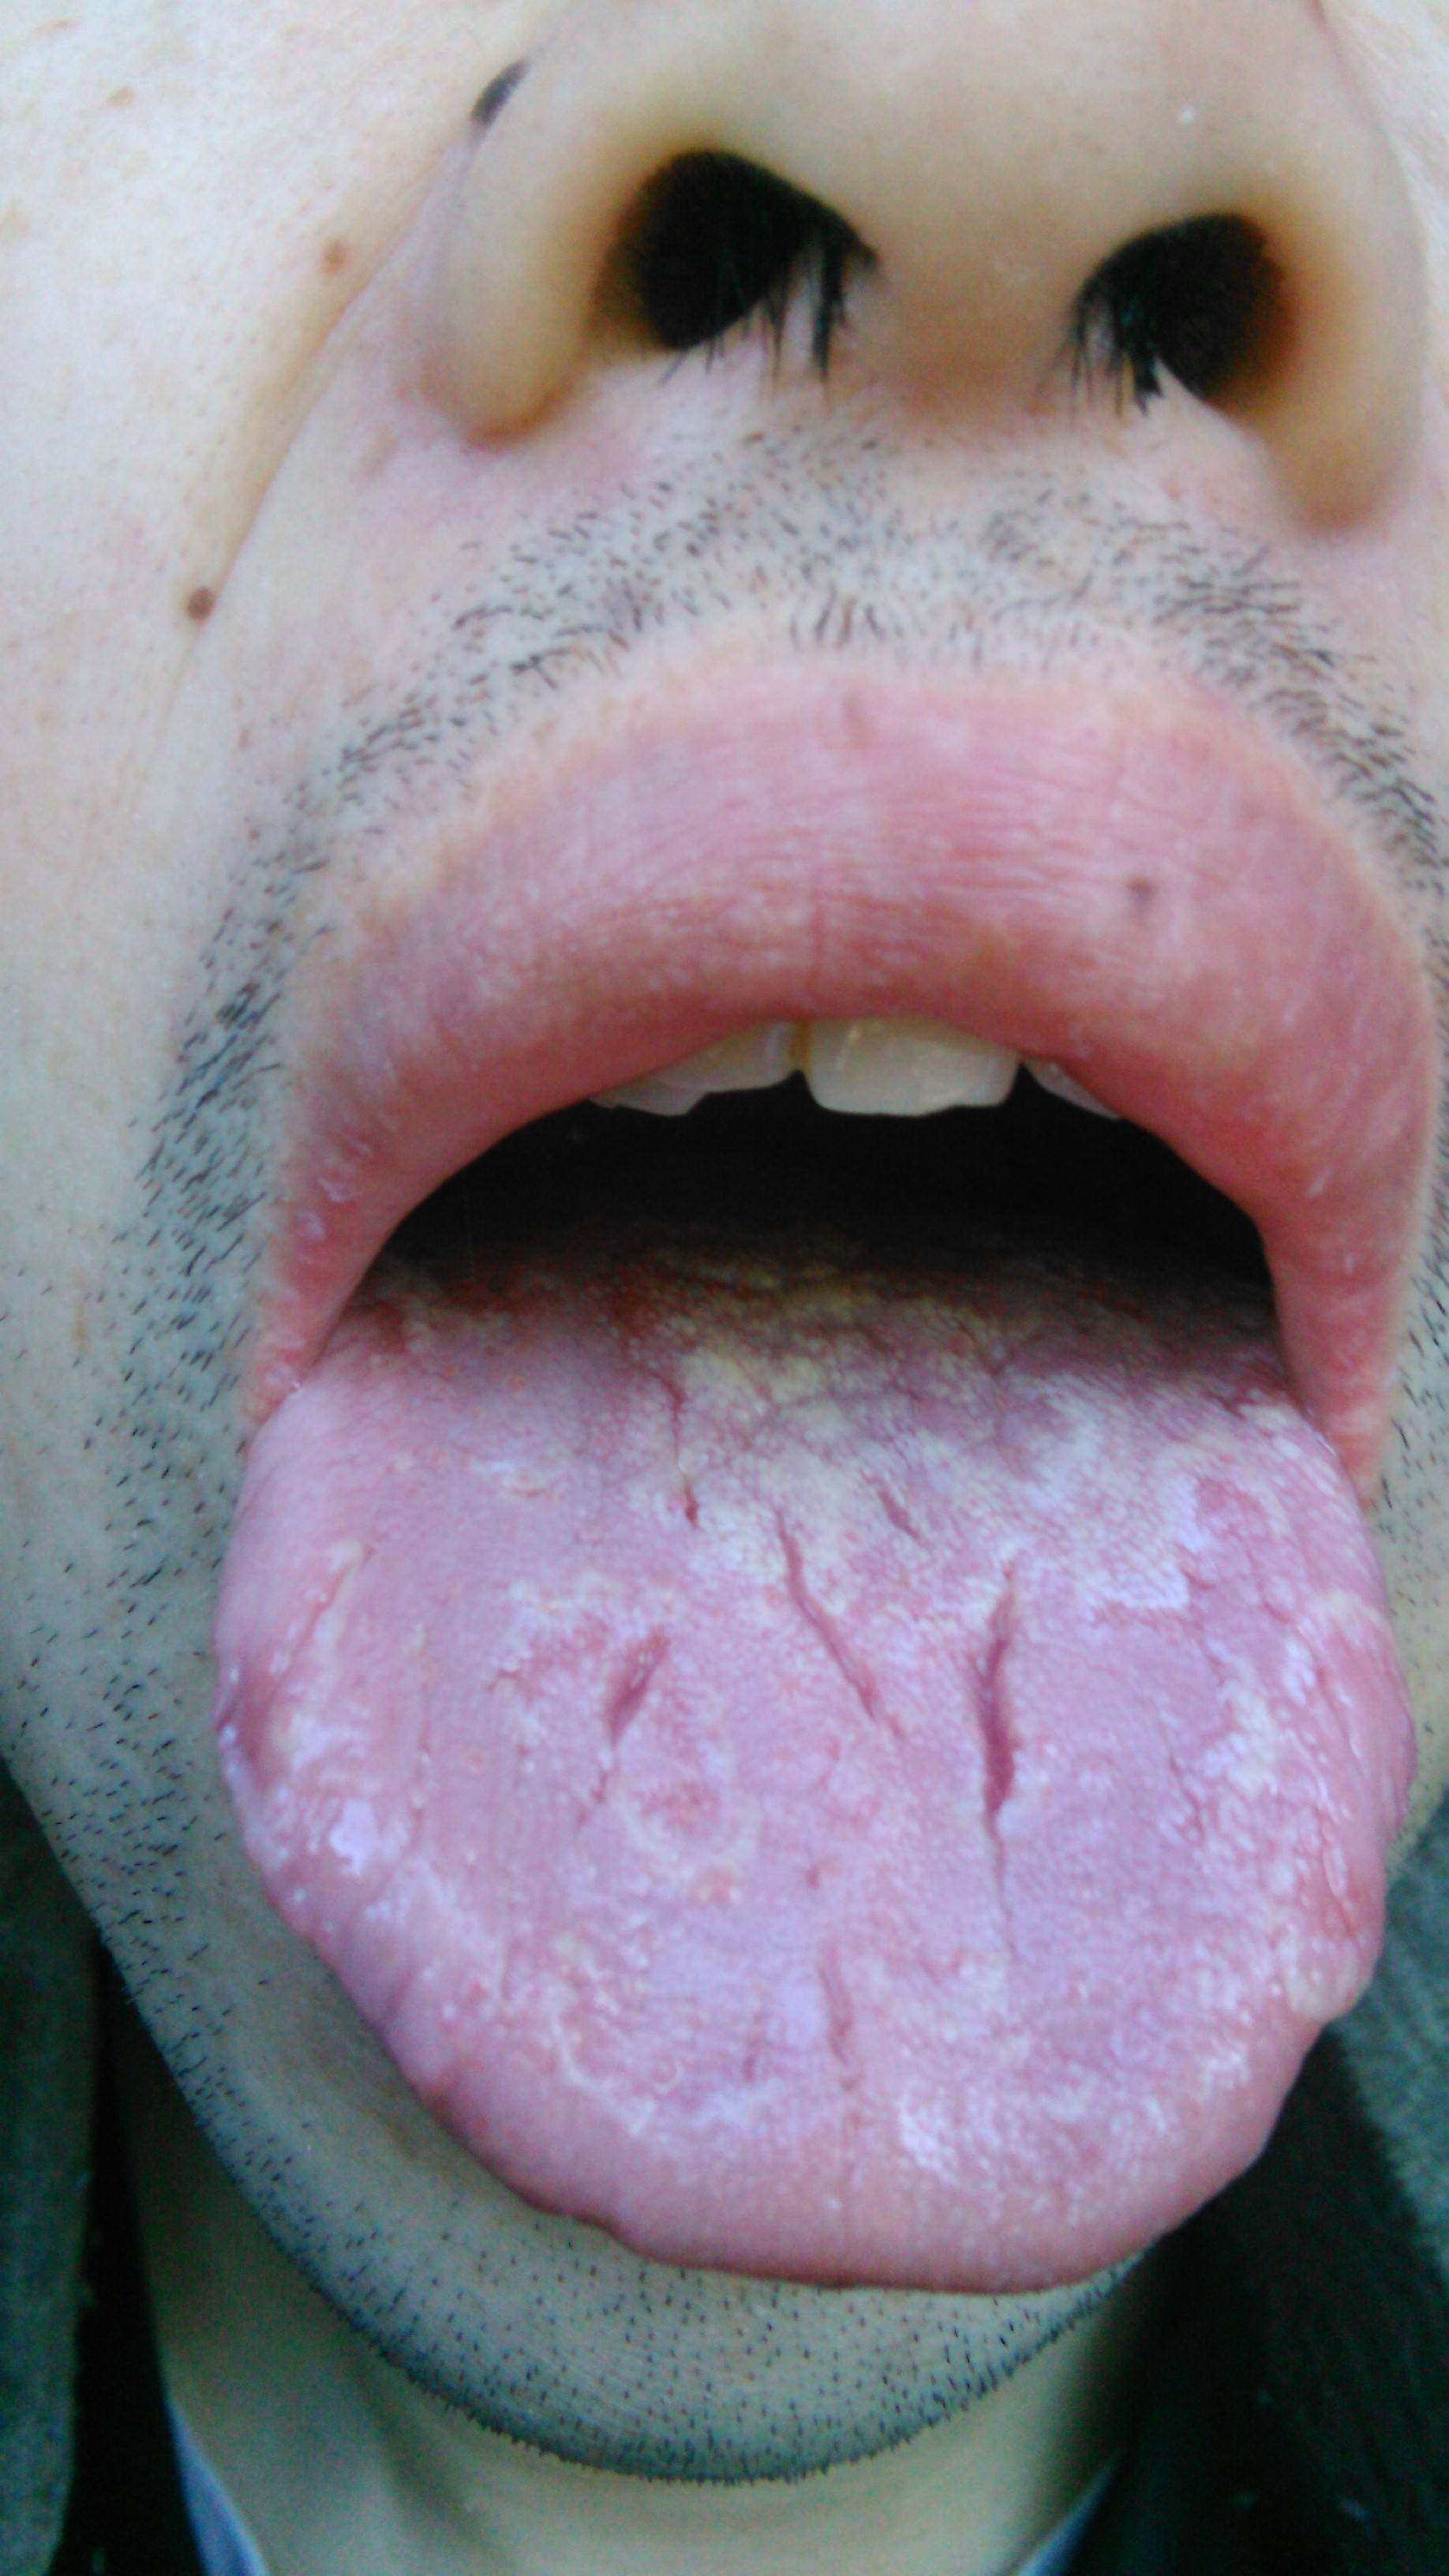 整个舌头都发白 后舌厚 上面都有小红点 还有齿痕_百度知道